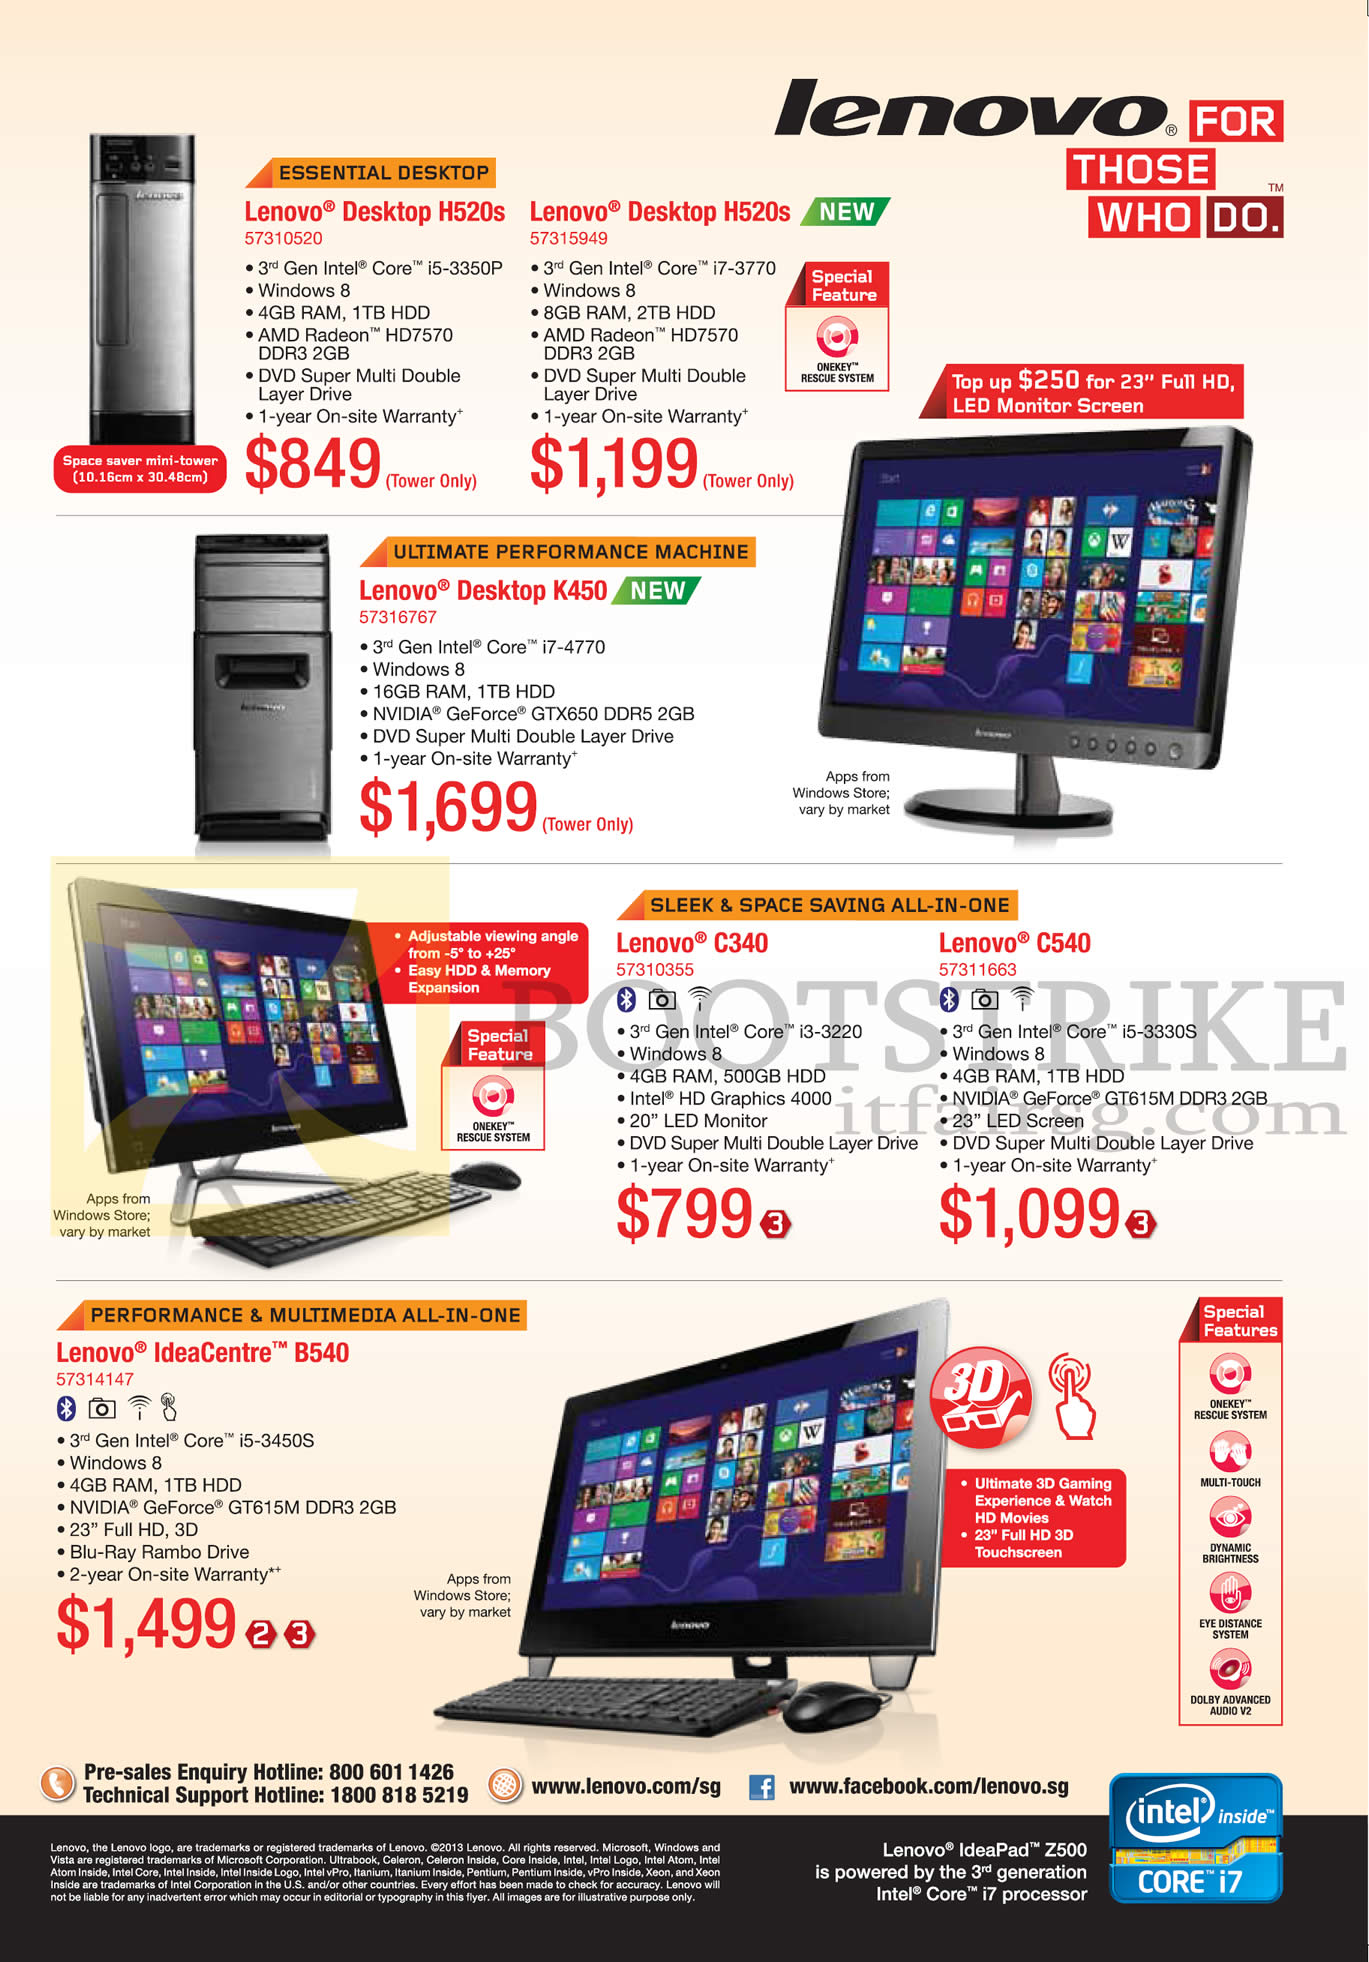 PC SHOW 2013 price list image brochure of Lenovo Desktop PCs, AIO Desktop PCs, H520s, K450, C340, C540, B540